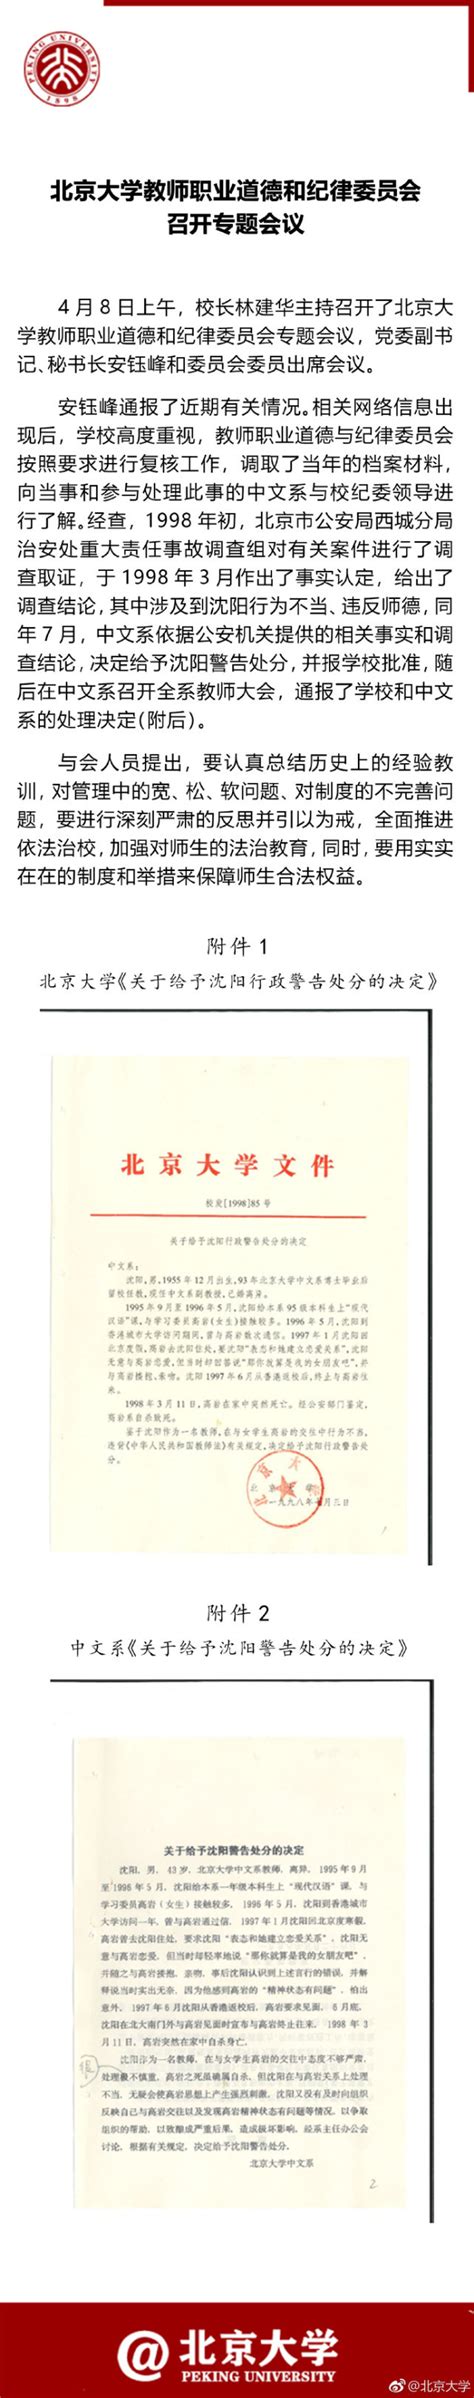 北京大学通报“沈阳性侵事件” 公开当年警告处分决定